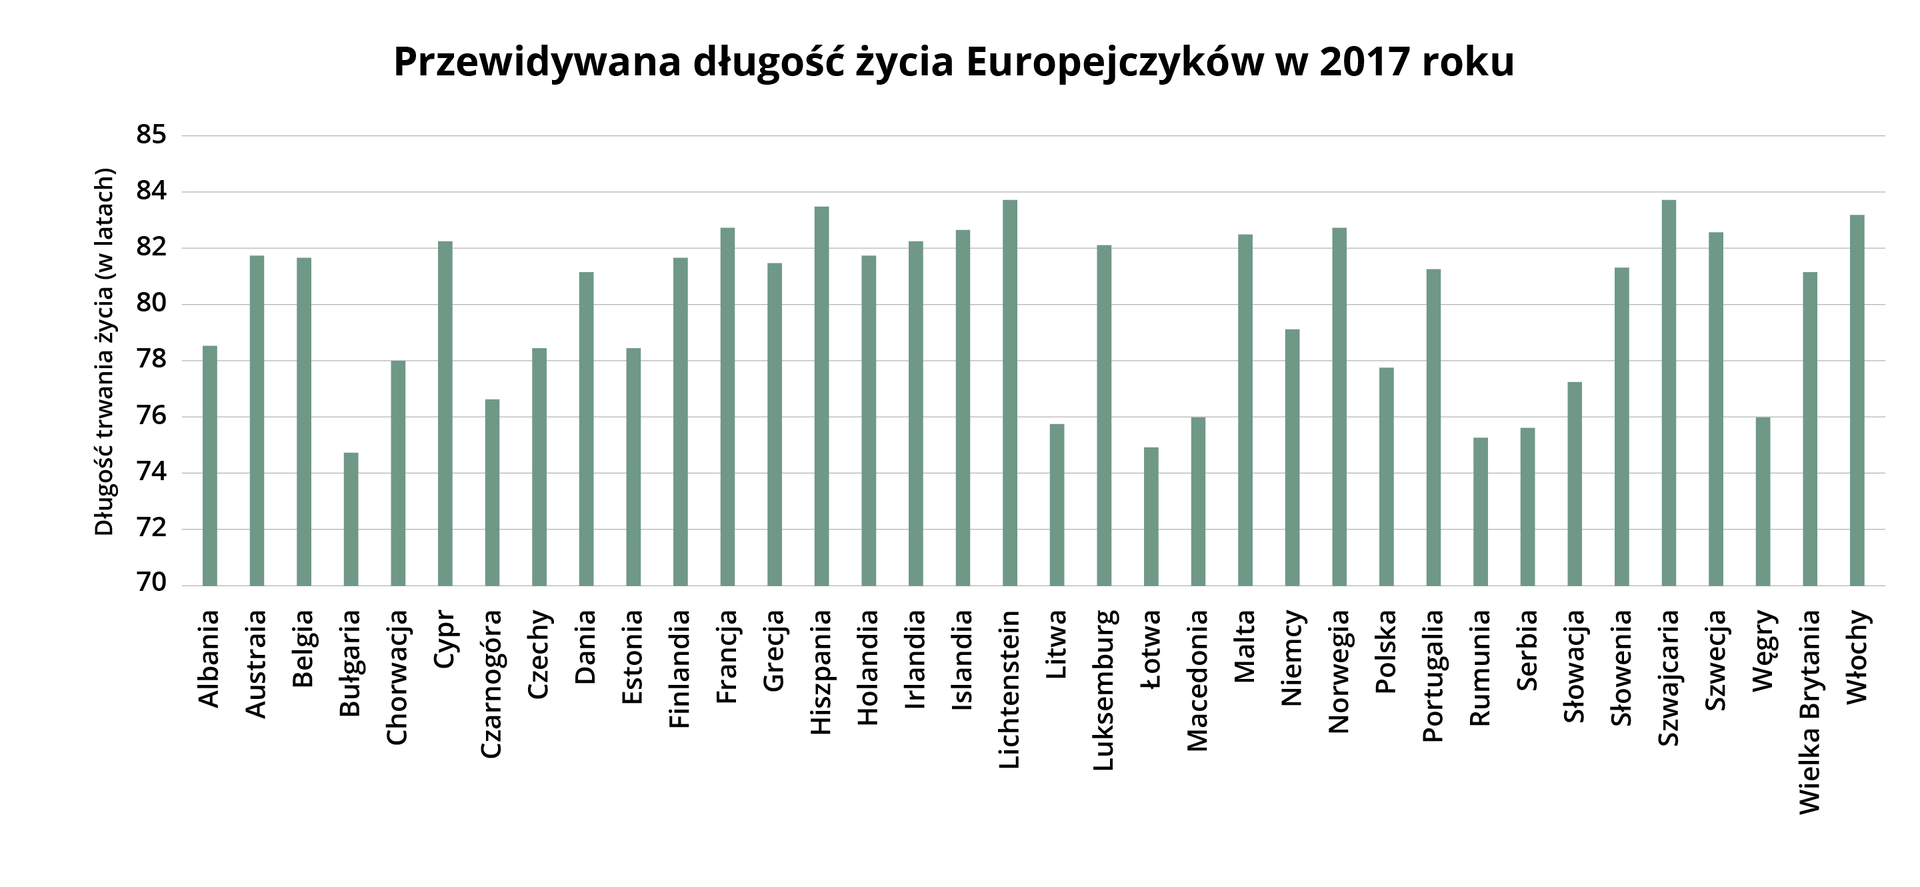 Wykres przedstawia przewidywaną długość życia Europejczyków według Eurostatu w 2017 roku. Albania 78,5 roku, Austria 82 lata, Belgia 82 lata, Bułgaria 74,5 roku, Chorwacja 78 lat, Cypr 82 lata, Czarnogóra 76,5 roku,  Czechy 78,2 roku, Dania 81 lat, Estonia 78,1 roku, Finlandia 81,8 roku, Francja 82,8 roku, Grecja 81,3 roku, Hiszpania 83,6 roku, Holandia 81,9 roku, Irlandia 82 lata, Islandia 82,5 roku, Lichtenstein 81,9 roku, Litwa 75,8 roku, Macedonia 76 lat, Malta 82,2 roku, Niemcy 79 lat, Norwegia 82,5, Polska 77,8 roku, Portugalia 81 lat, Rumunia 75 lat, Serbia 75,7 roku, Słowacja 77 lat, Słowenia 81 lat, Szwajcaria 83,8 roku, Szwecja 82,5 roku,￼￼Węgry￼ 76 lat, Wielka Brytania 81 lat, Włochy 83 lata￼.